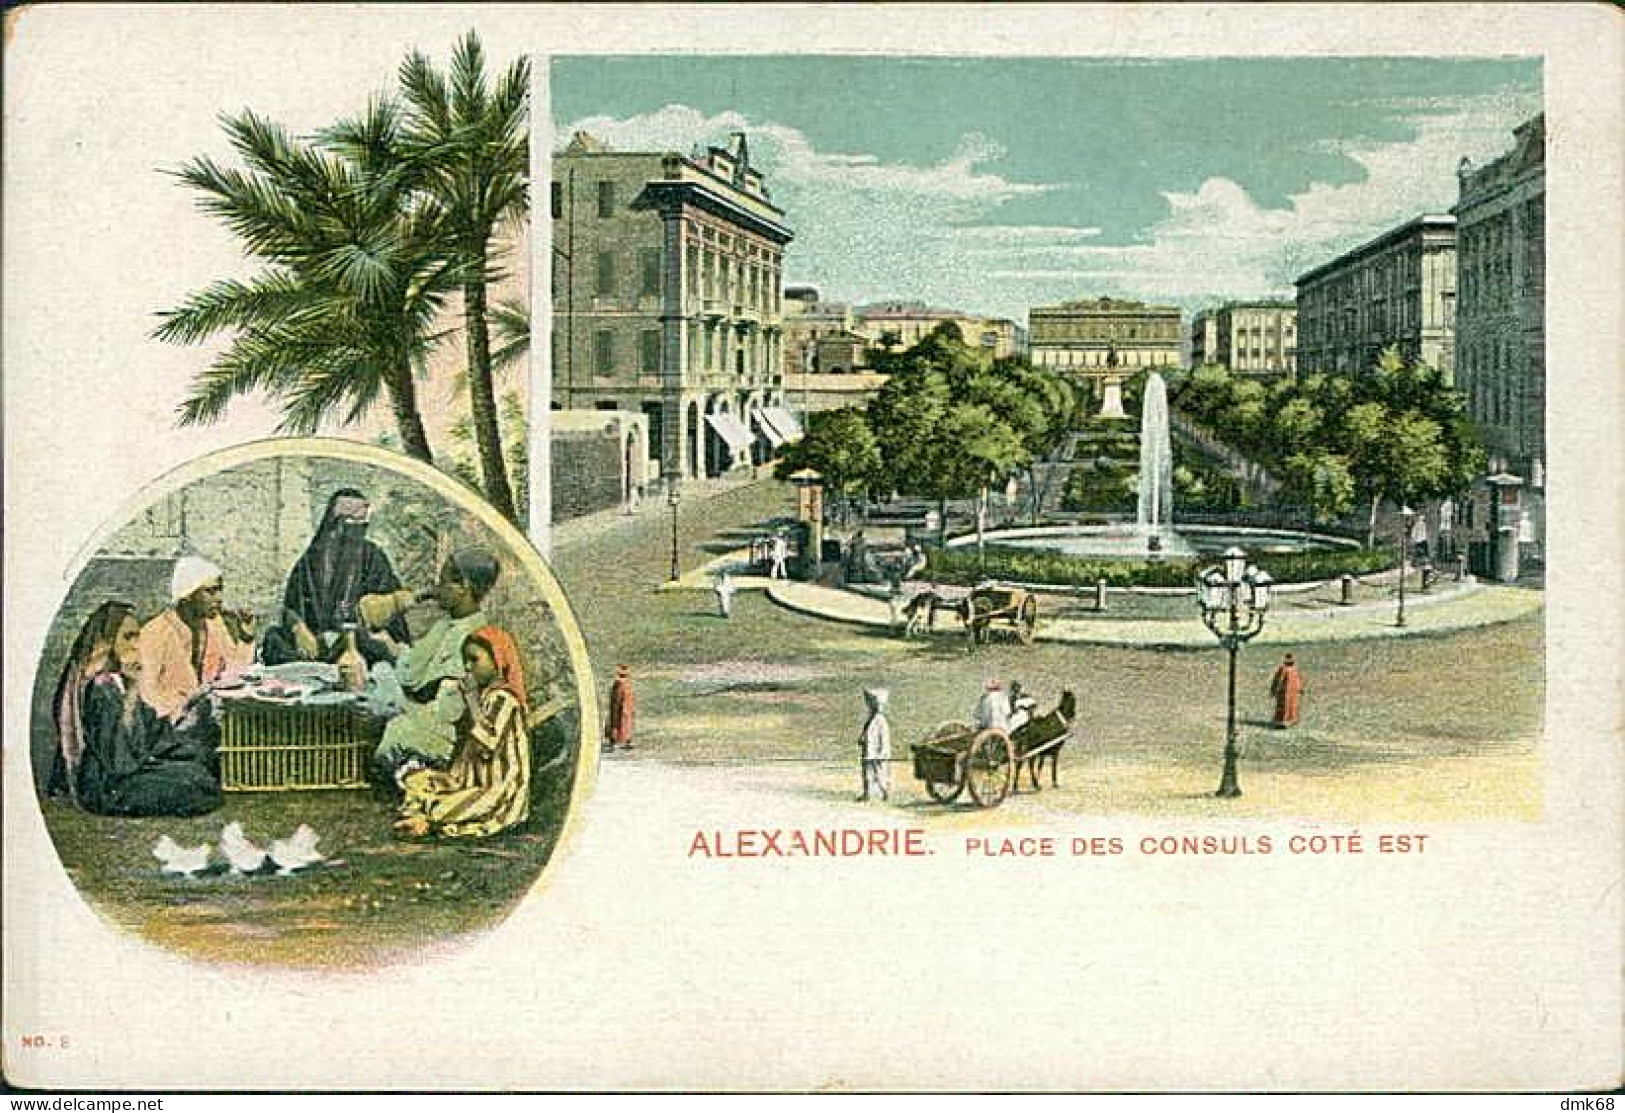 EGYPT - ALEXANDRIA / ALEXANDRIE - PLACE DES CONSULS COTE EST - 1900s (12636) - Alexandrie